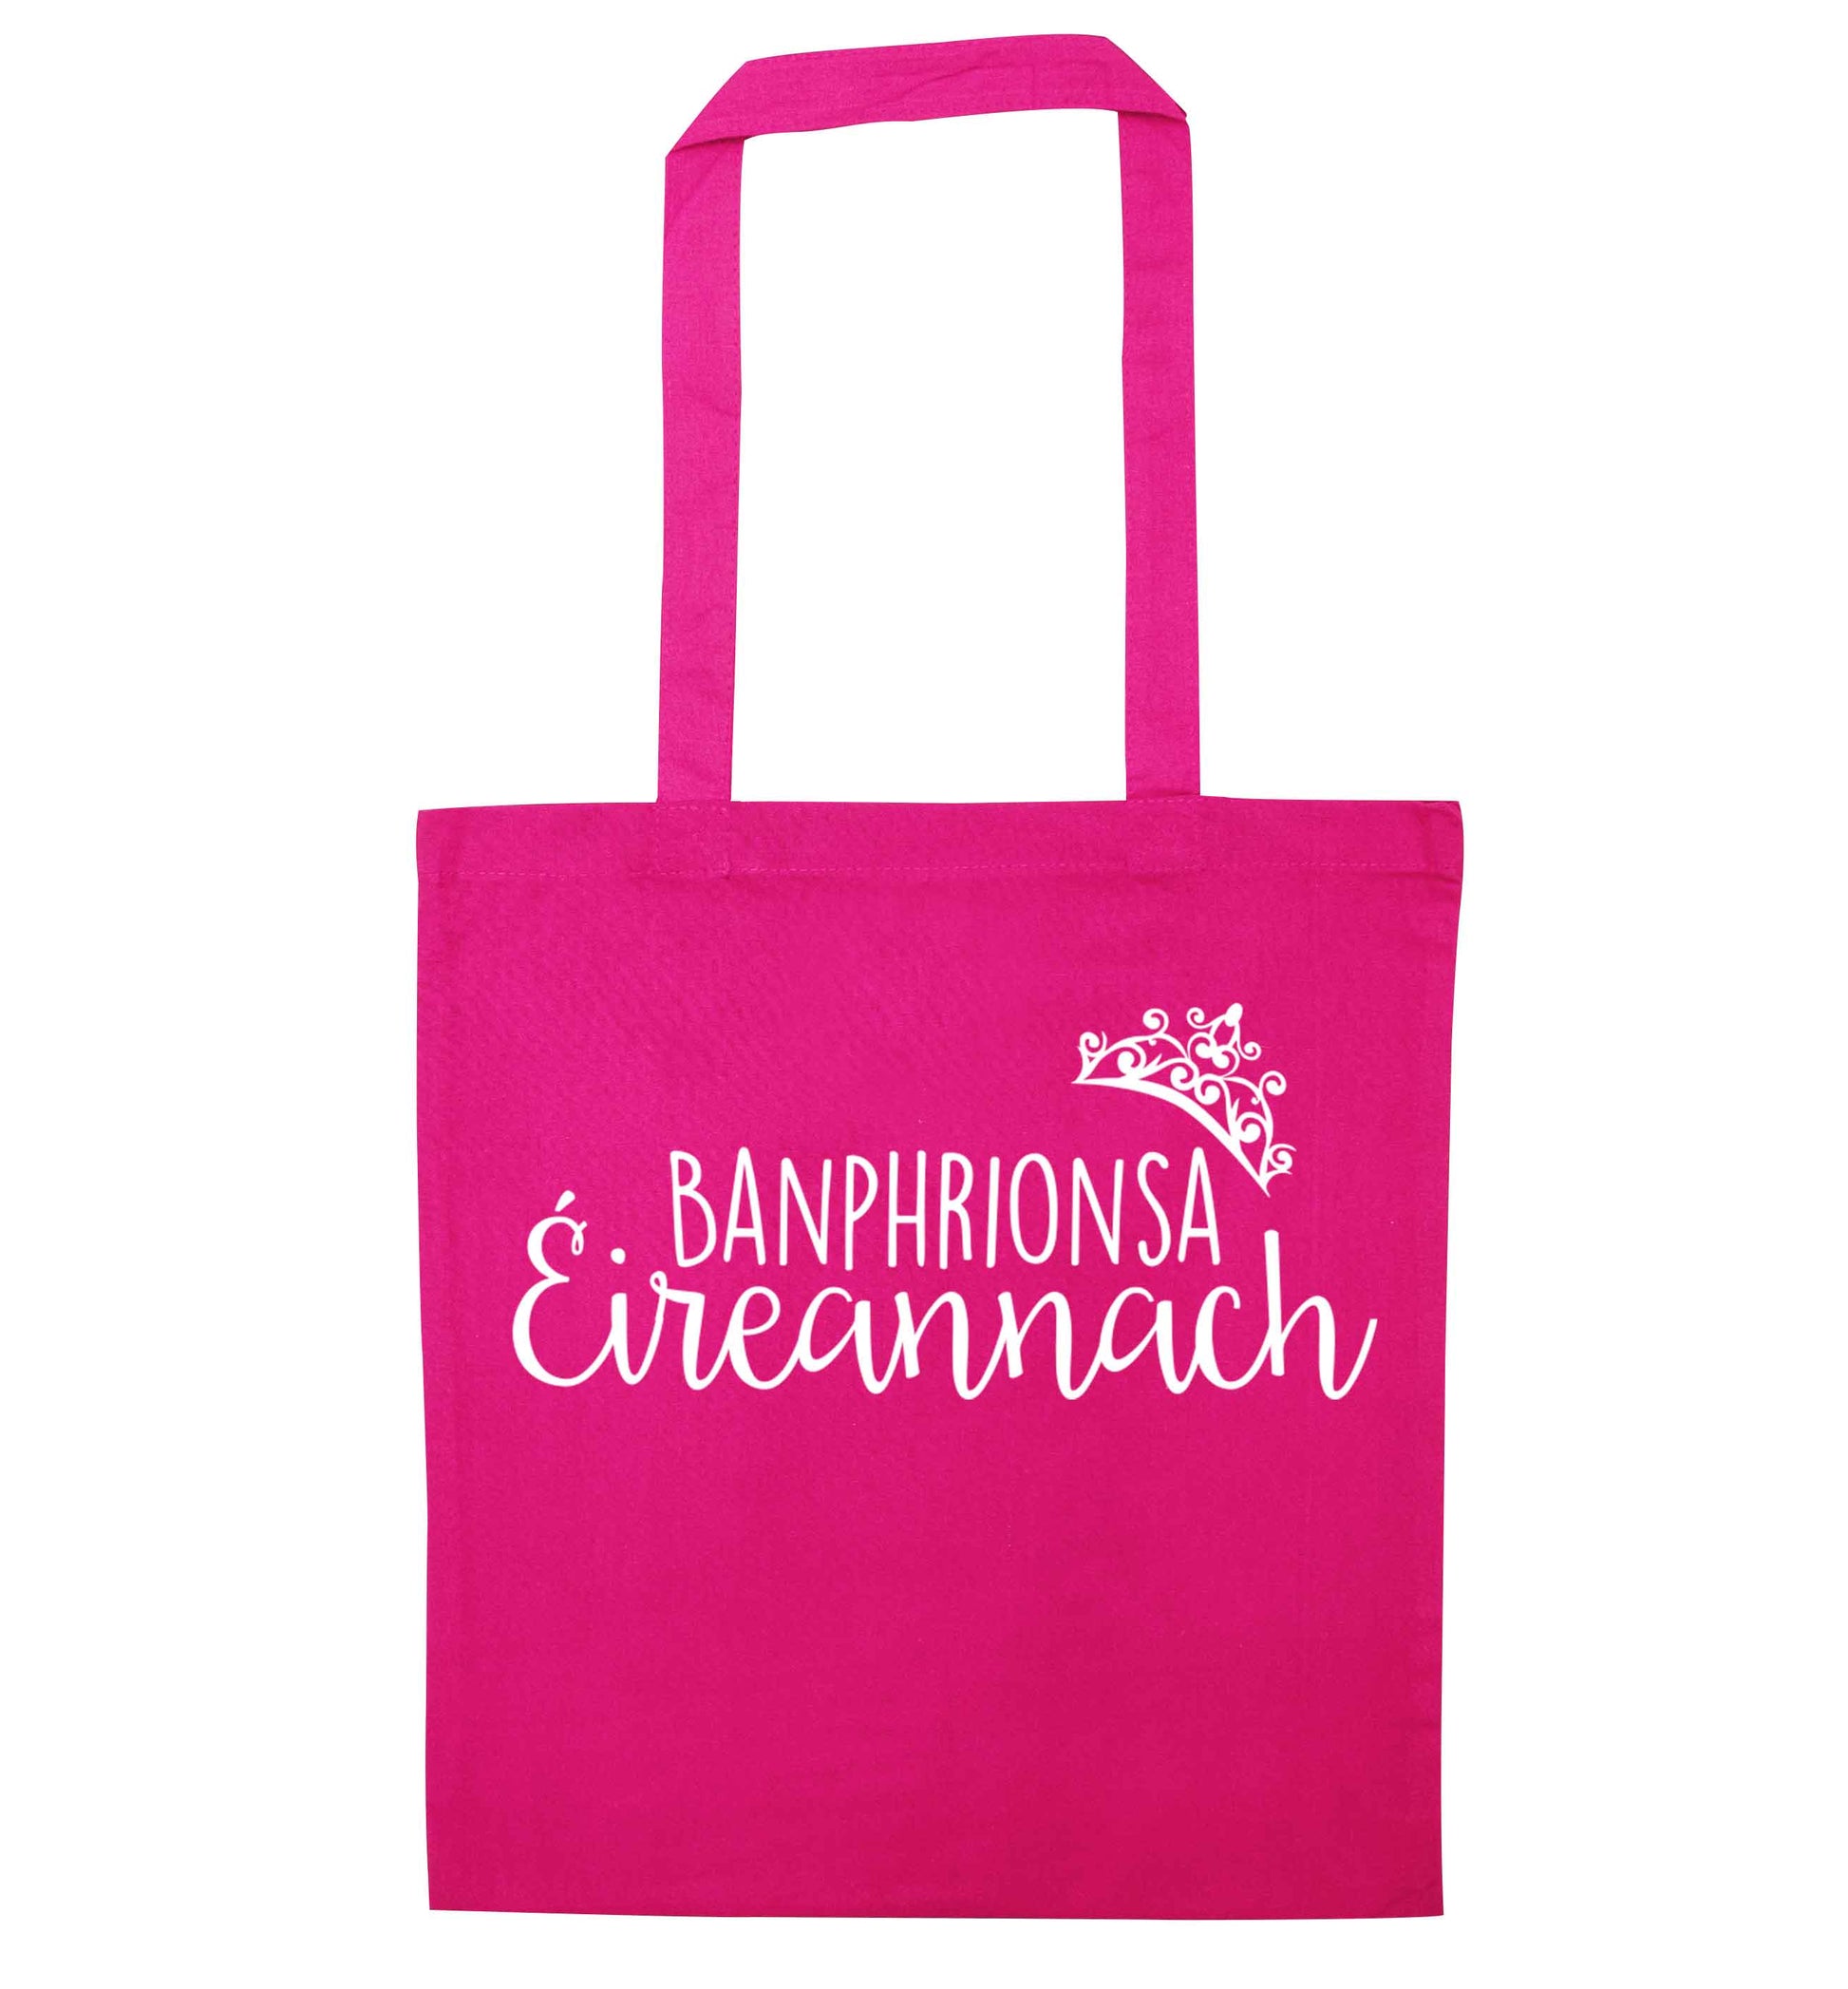 Banphrionsa eireannach pink tote bag